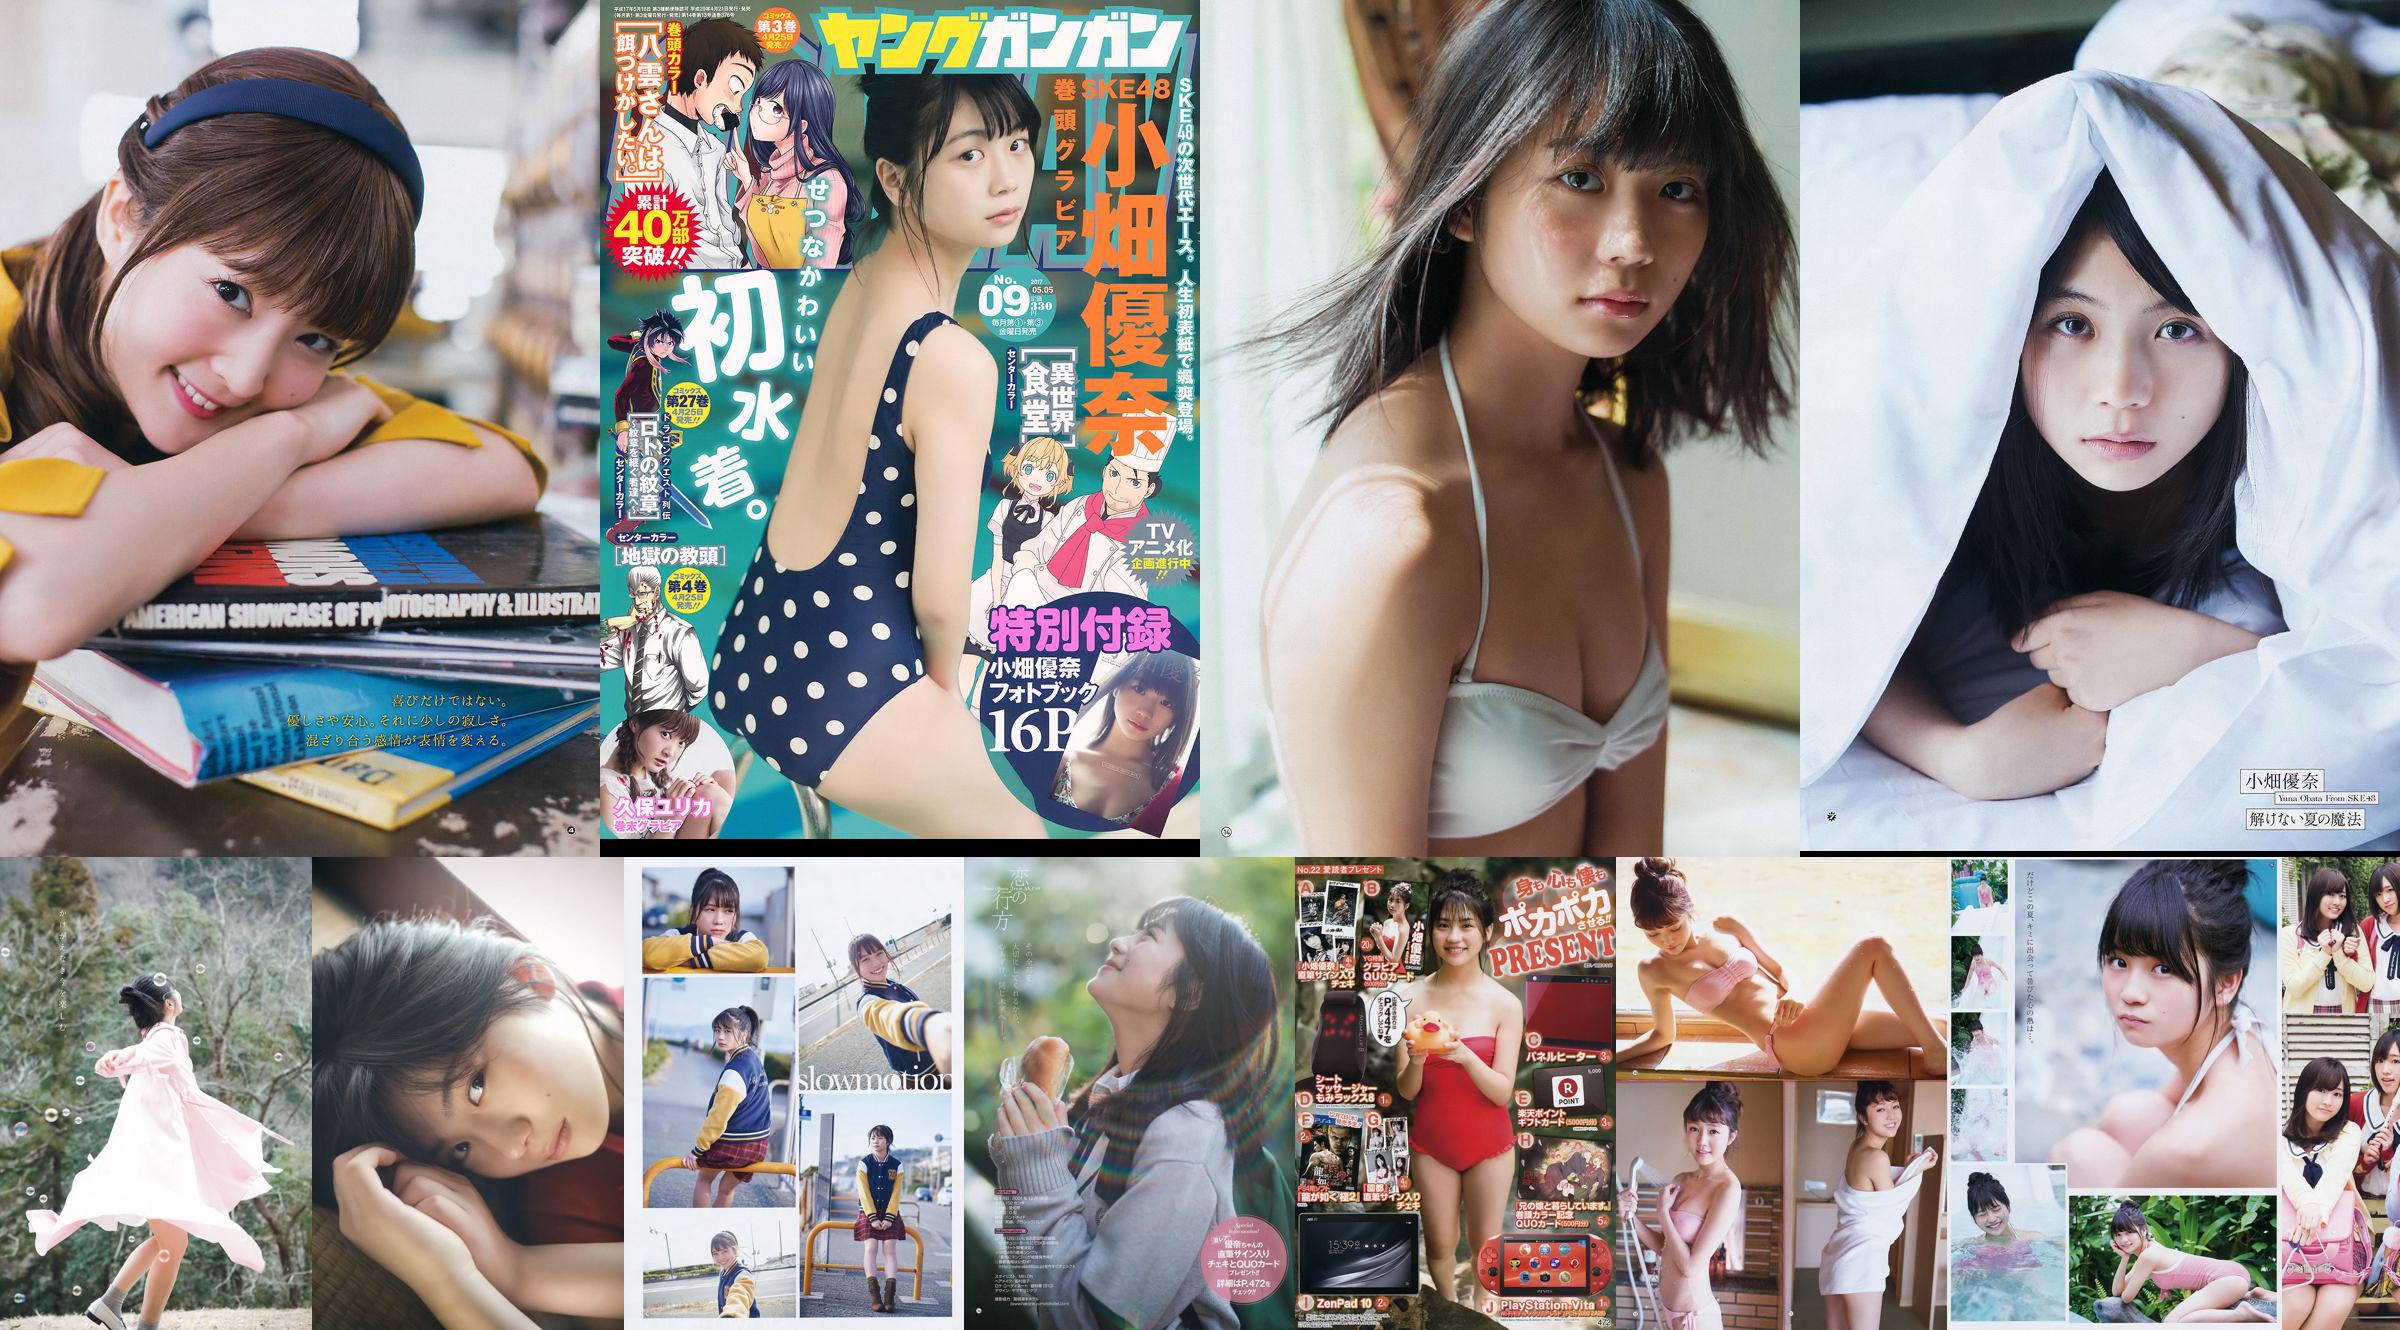 [Young Gangan] Yuna Obata Mina Oba Yume Hayashi 2018 No.12 Photo Magazine No.3c8428 Pagina 1